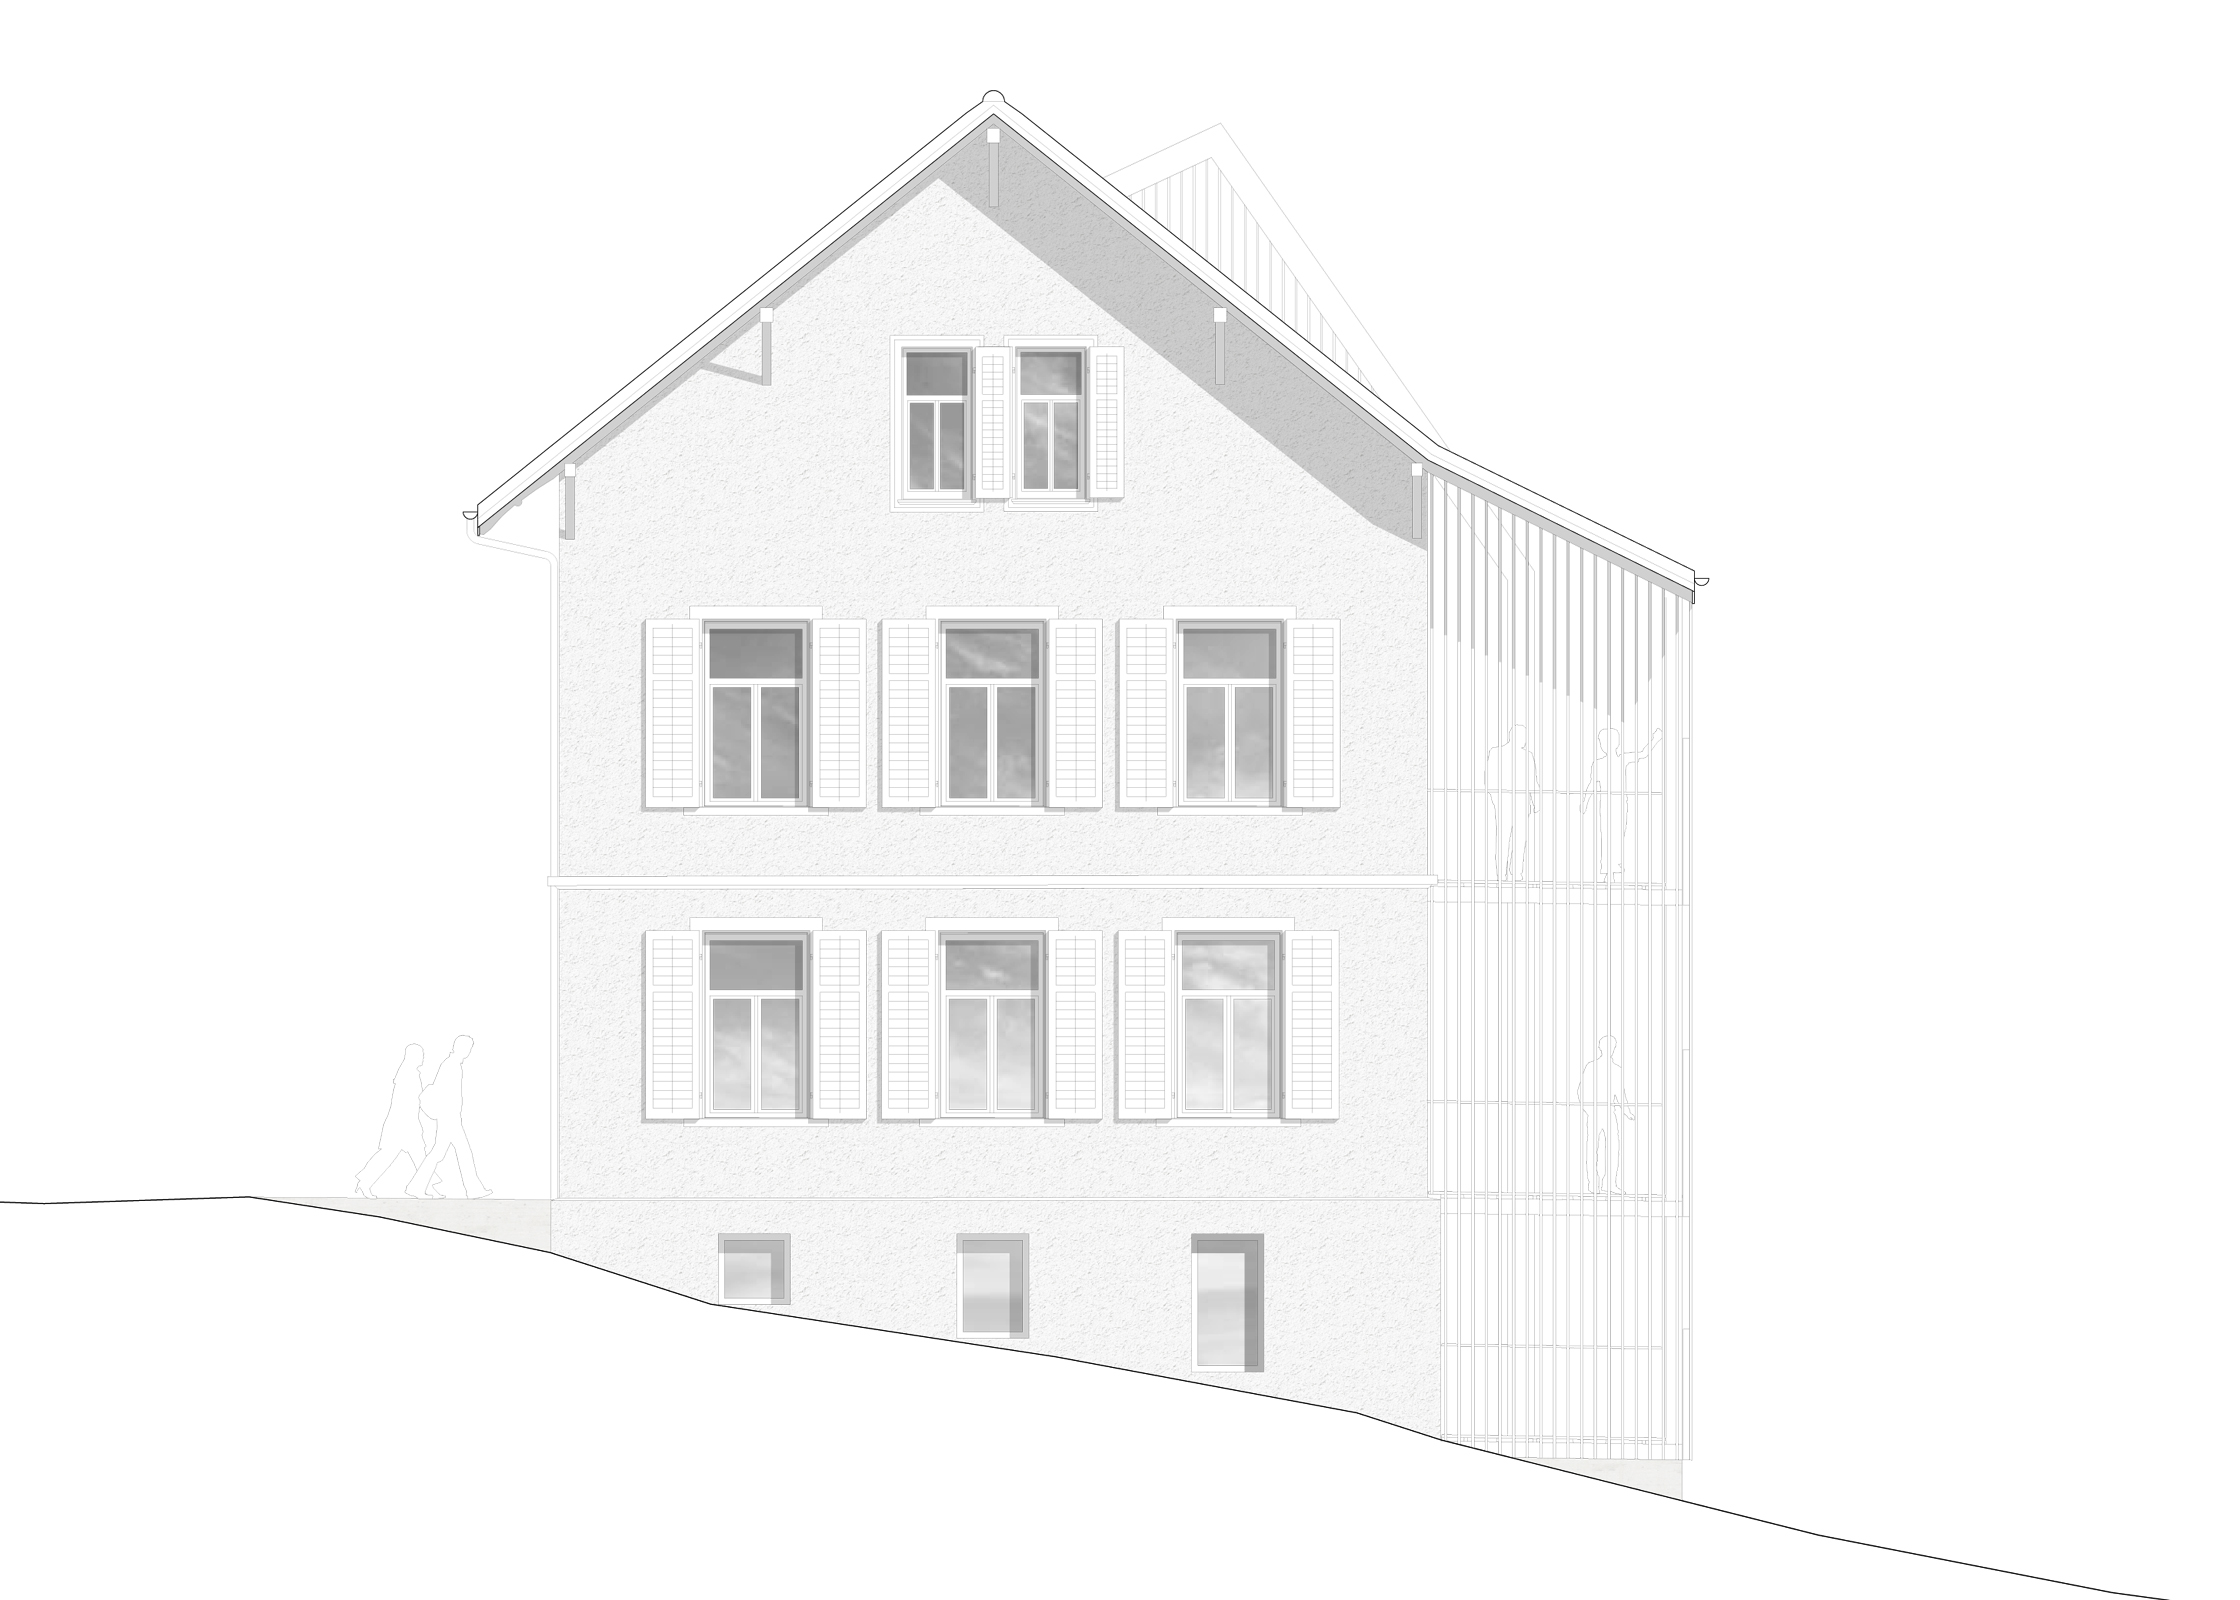 Heilpädagogisches Zentrum, Hagendorn, Eggenspieler Architekten AG